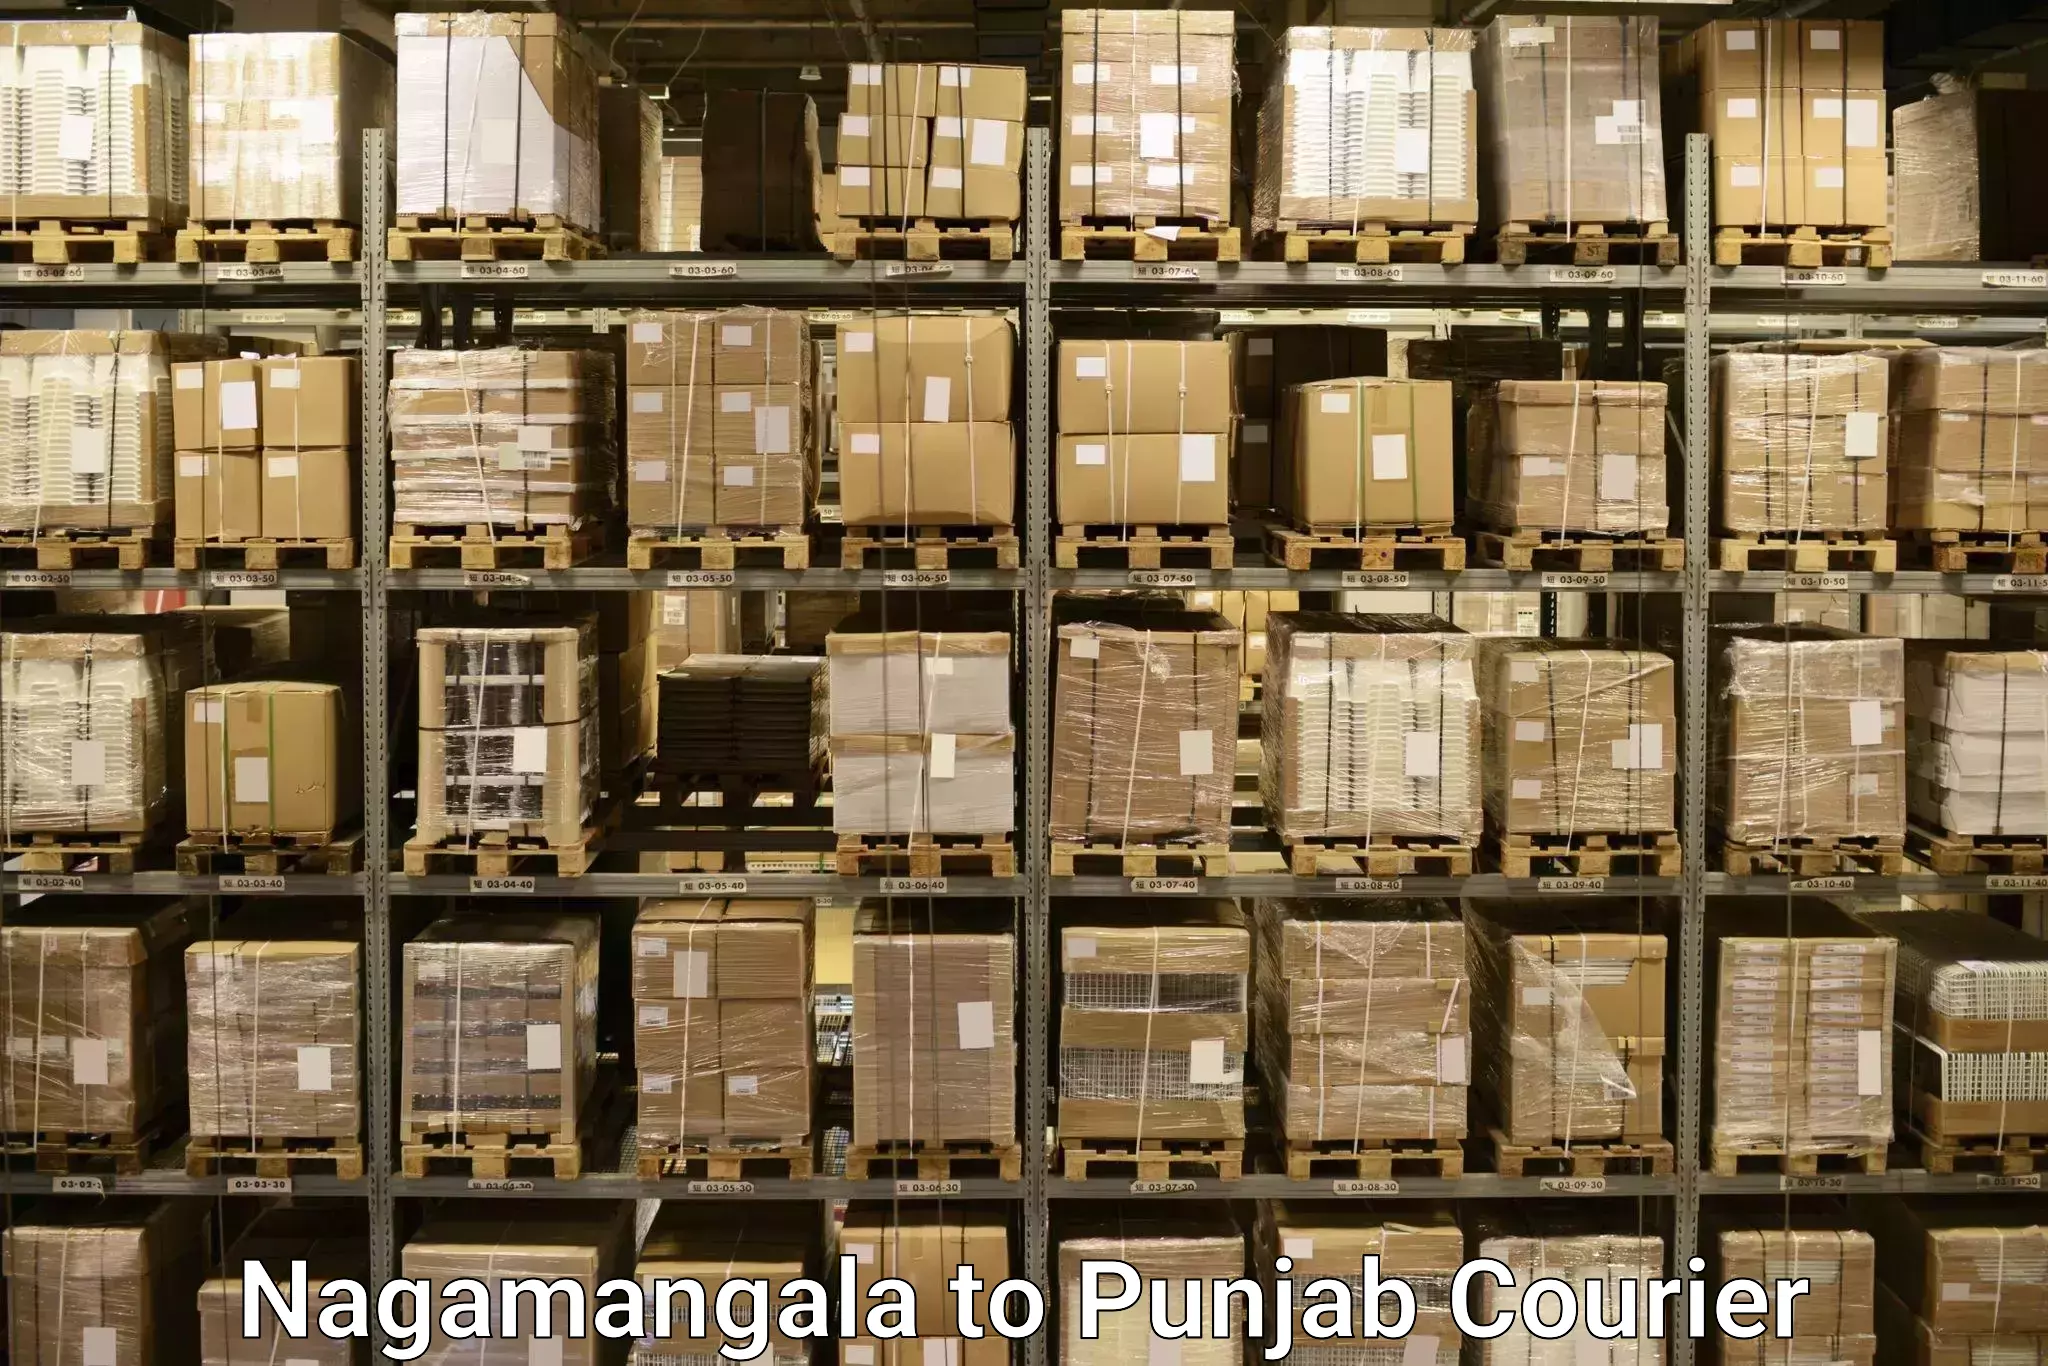 Baggage transport technology in Nagamangala to Central University of Punjab Bathinda